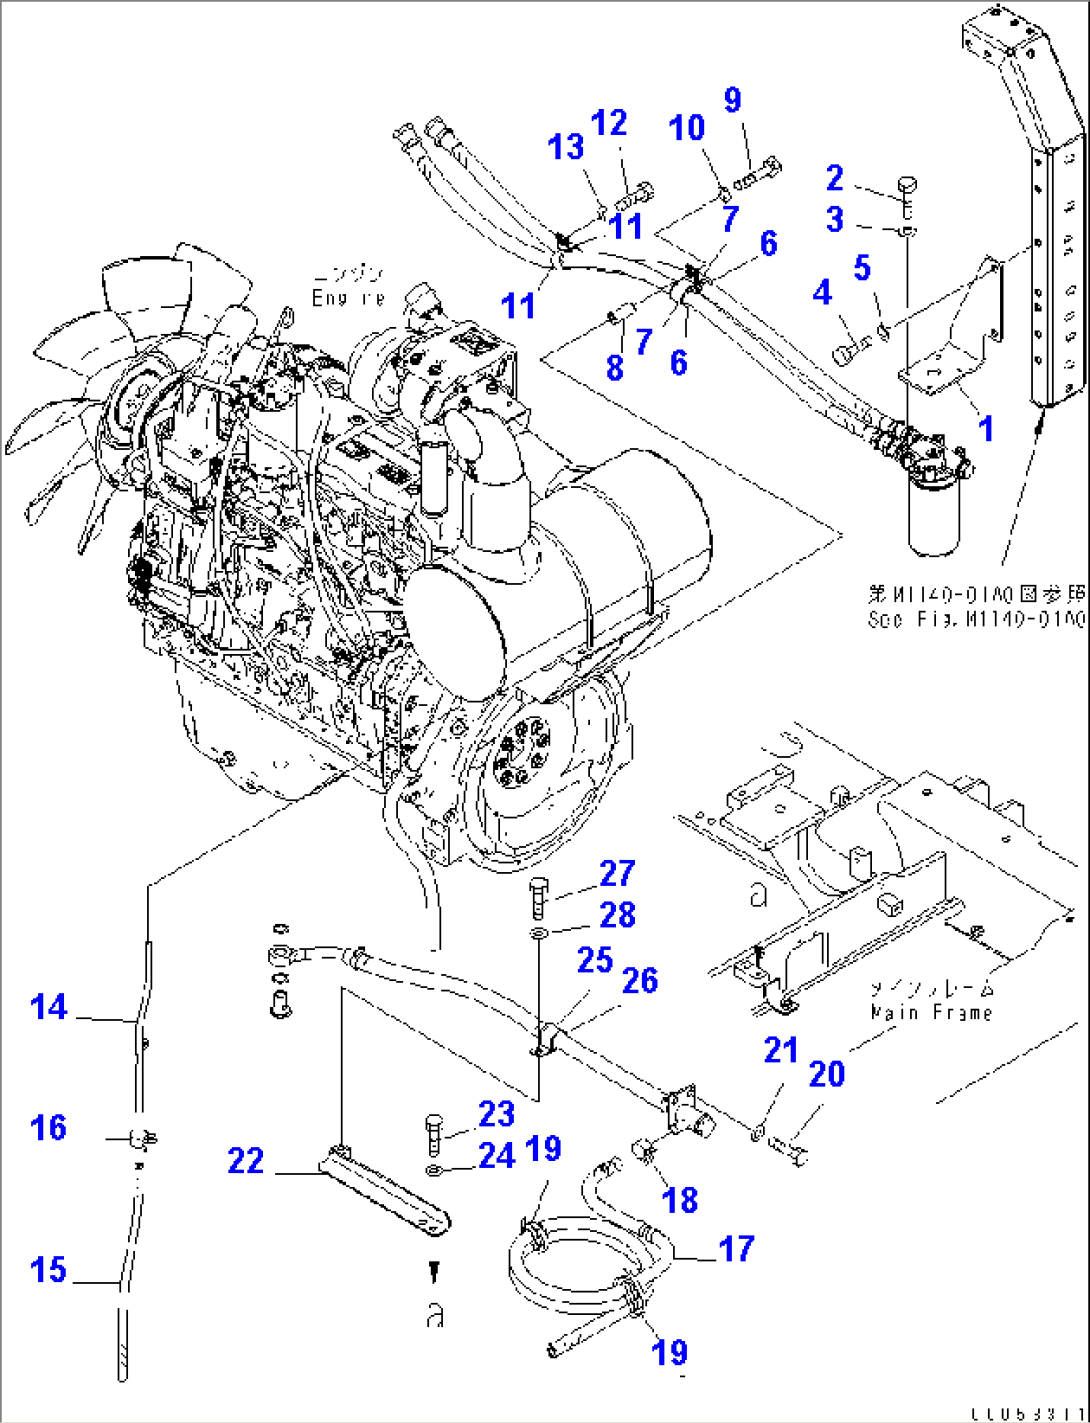 ENGINE MOUNT (FILTER REMOTE)(#2001-)